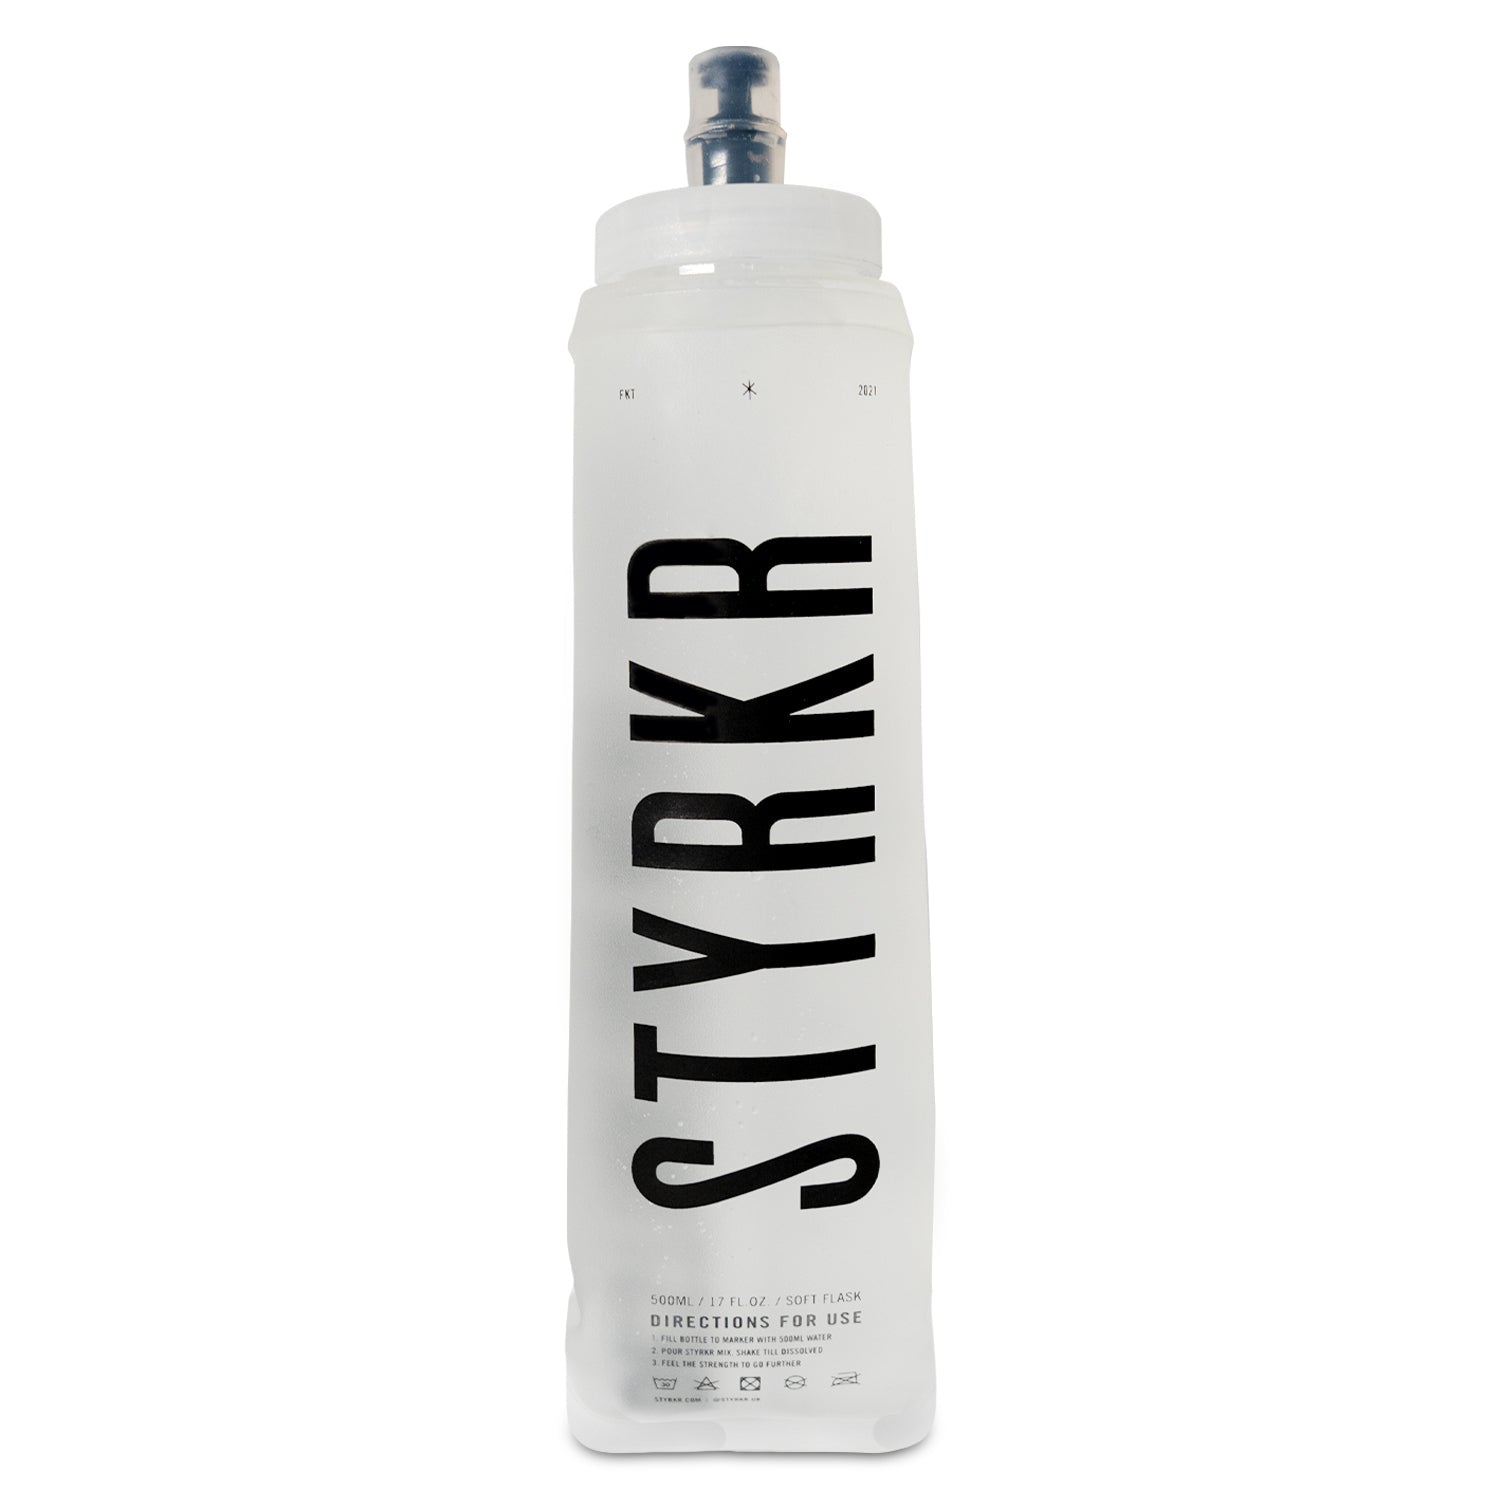 STYRKR Weichflasche (500ml)